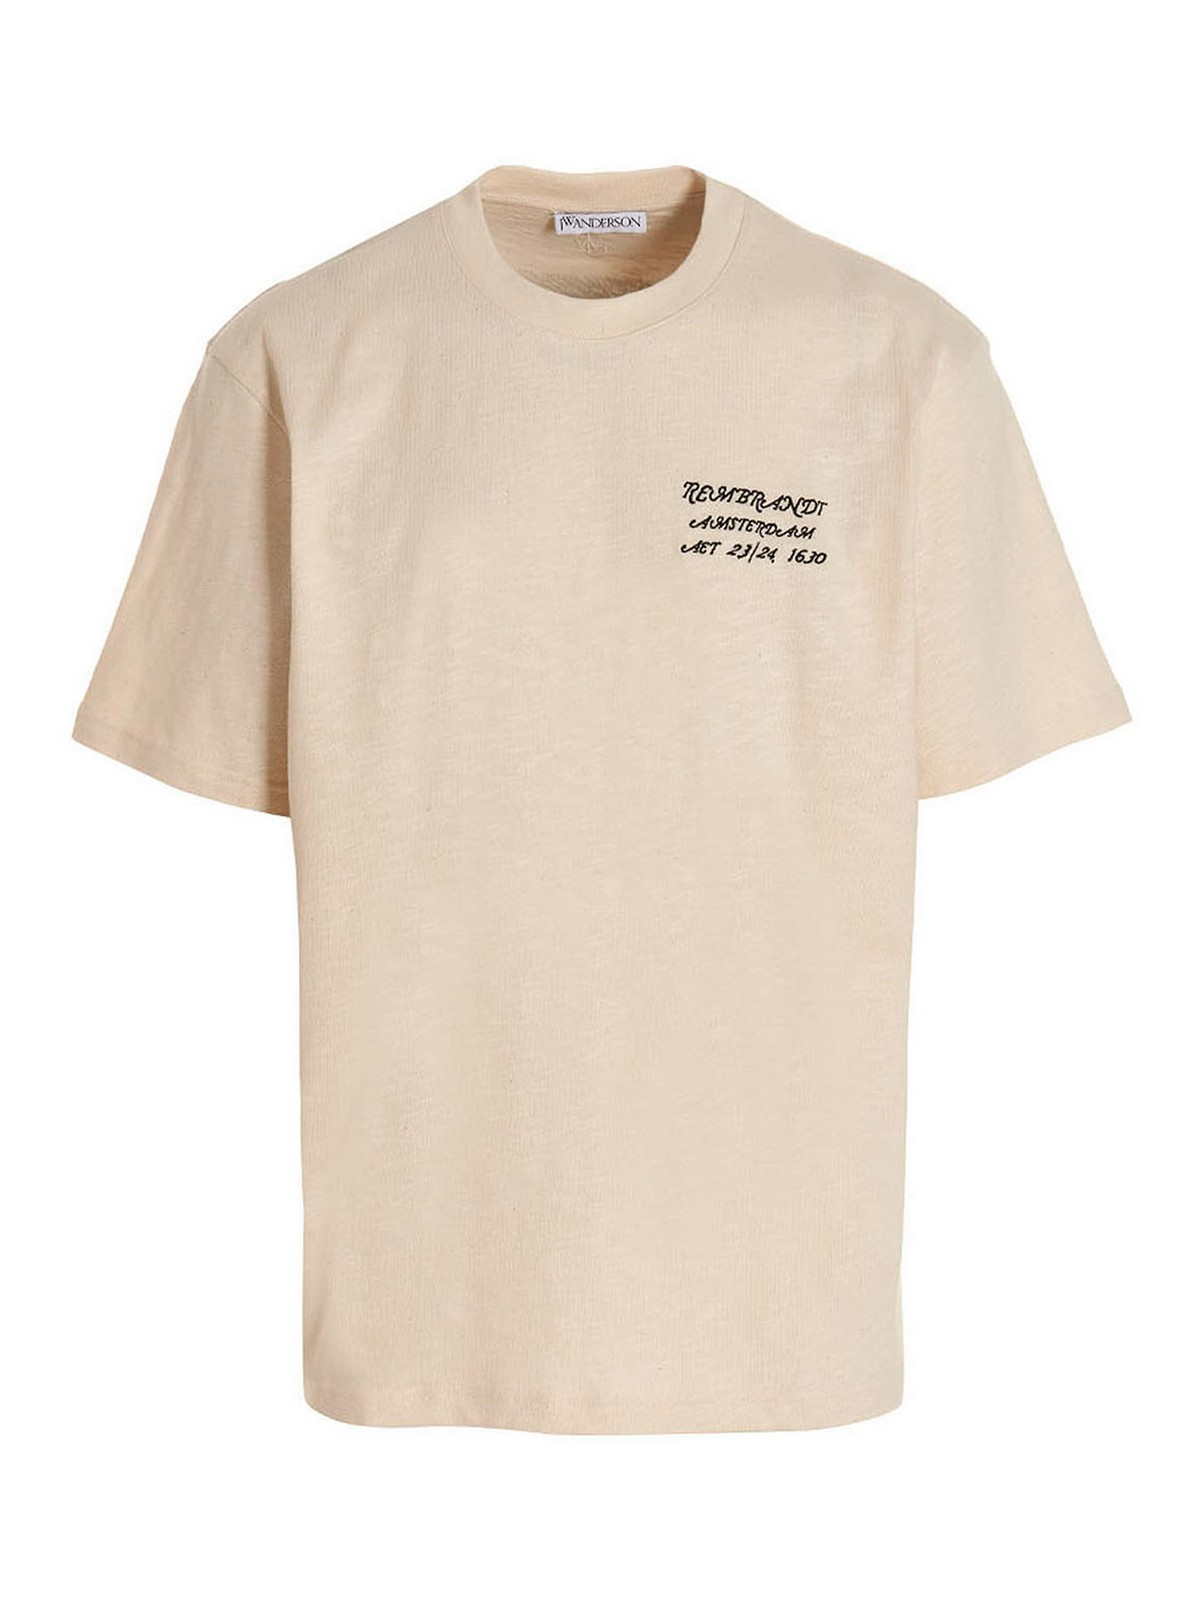 T-shirts J.W. Anderson - Rembrandt cotton t-shirt - JT0126PG1193002